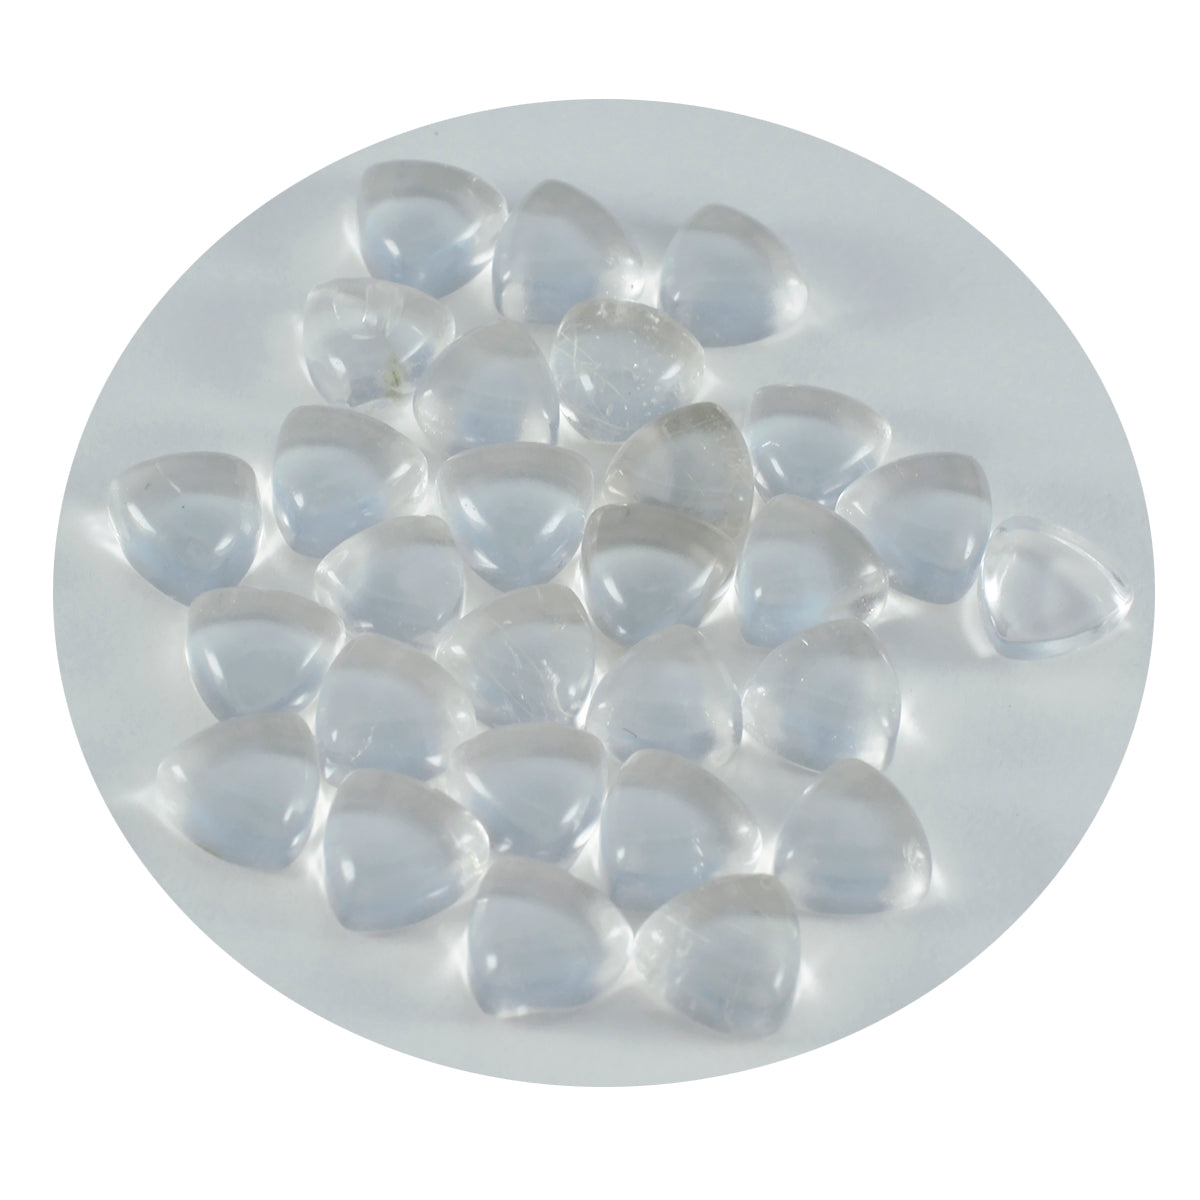 Riyogems – cabochon de quartz en cristal blanc, 9x9mm, en forme de trillion, pierre précieuse de qualité douce, 1 pièce